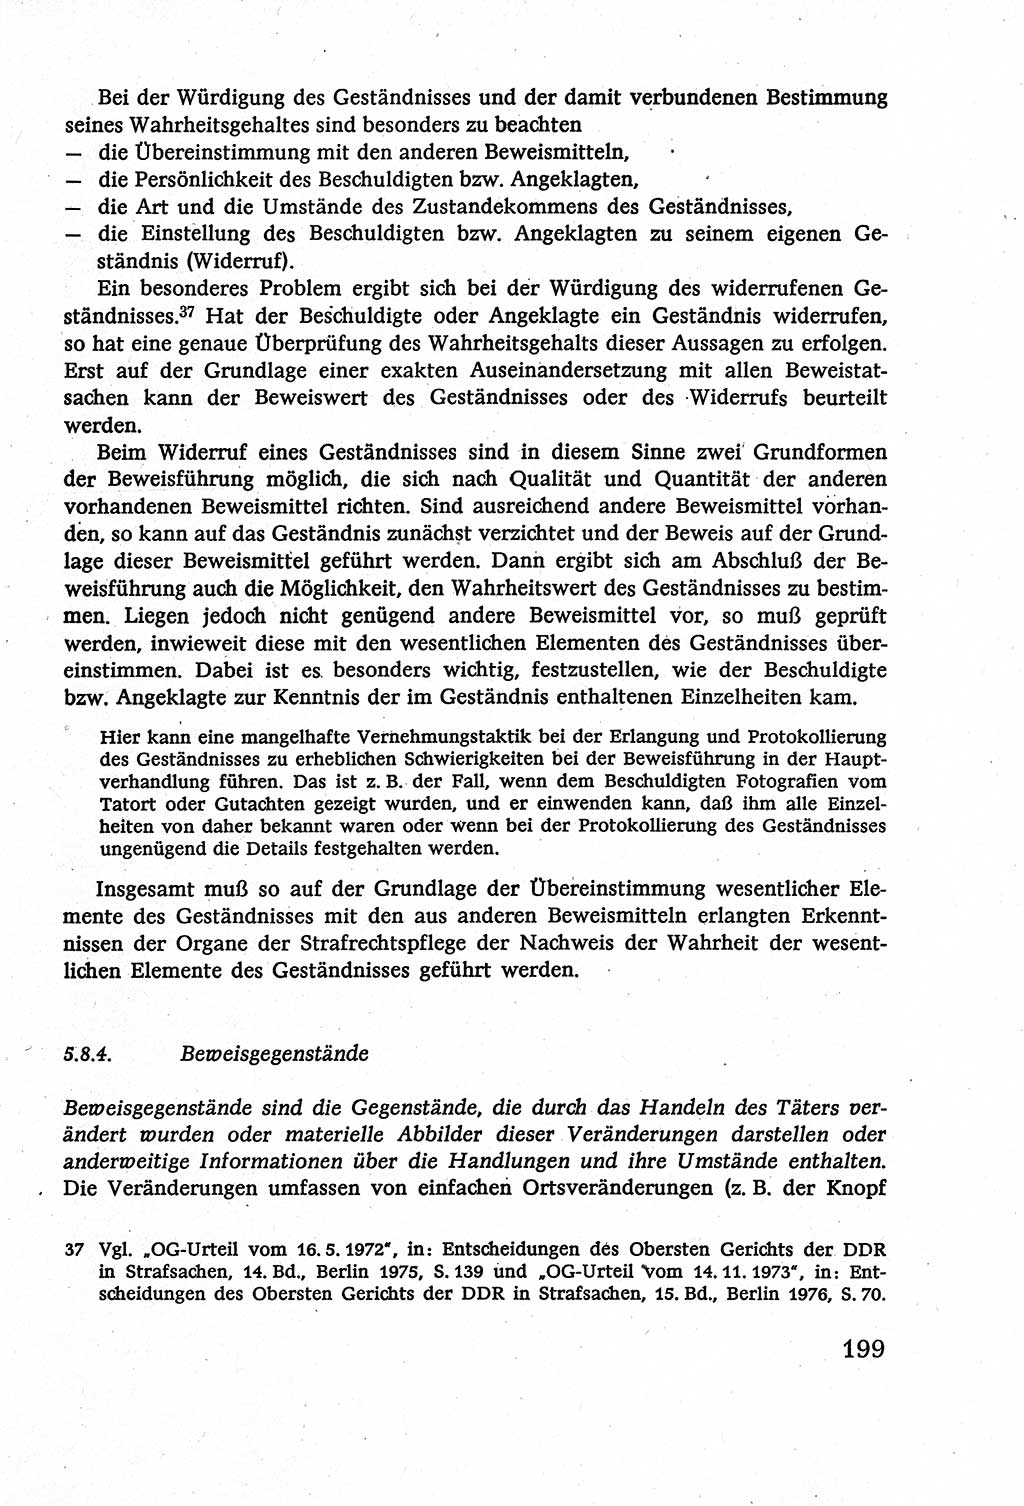 Strafverfahrensrecht [Deutsche Demokratische Republik (DDR)], Lehrbuch 1977, Seite 199 (Strafverf.-R. DDR Lb. 1977, S. 199)